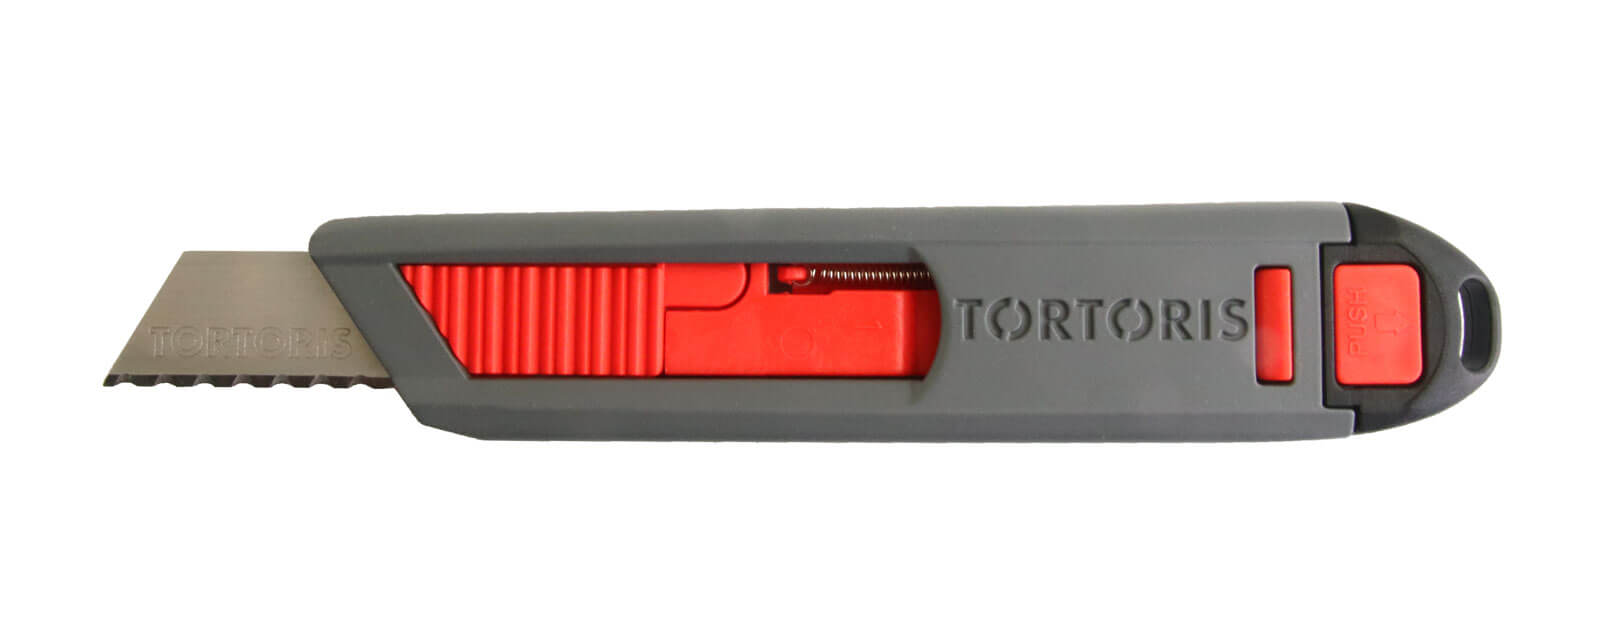 S11-Sicherheitsmesser-Tortoris-40mm-automatischer-Klingenrückzug_1600